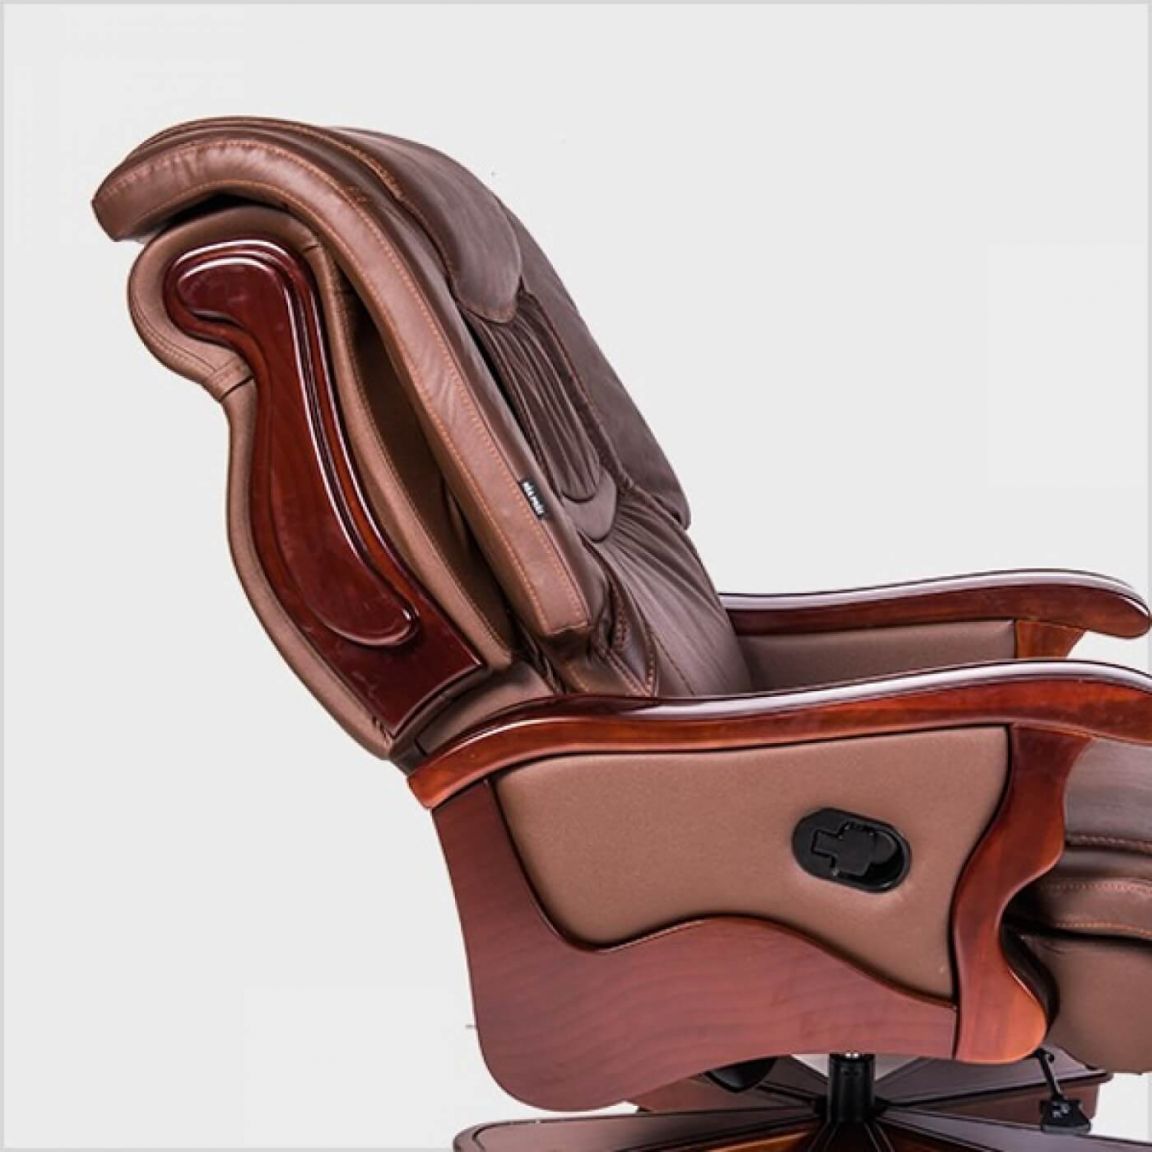 Phần lưng ghế giám đốc gỗ tự nhiên TQ20 thiết kế độ cong phù hợp, nâng đỡ cột sống người dùng